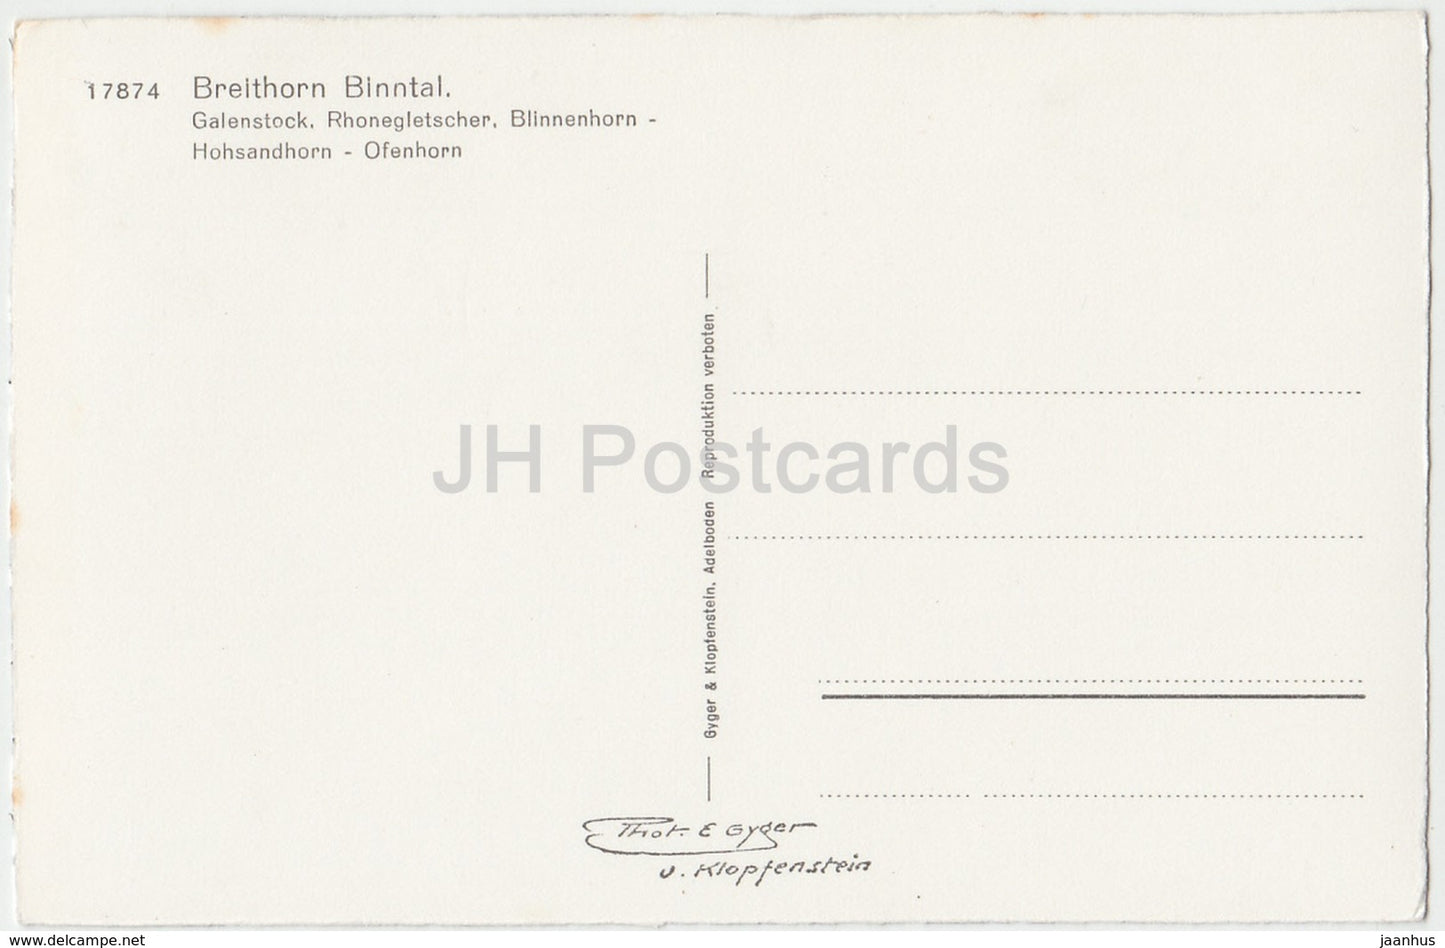 Breithorn Binntal - Galenstock - Rhonegletscher - Blinnenhorn - 17874 - Switzerland - old postcard - unused